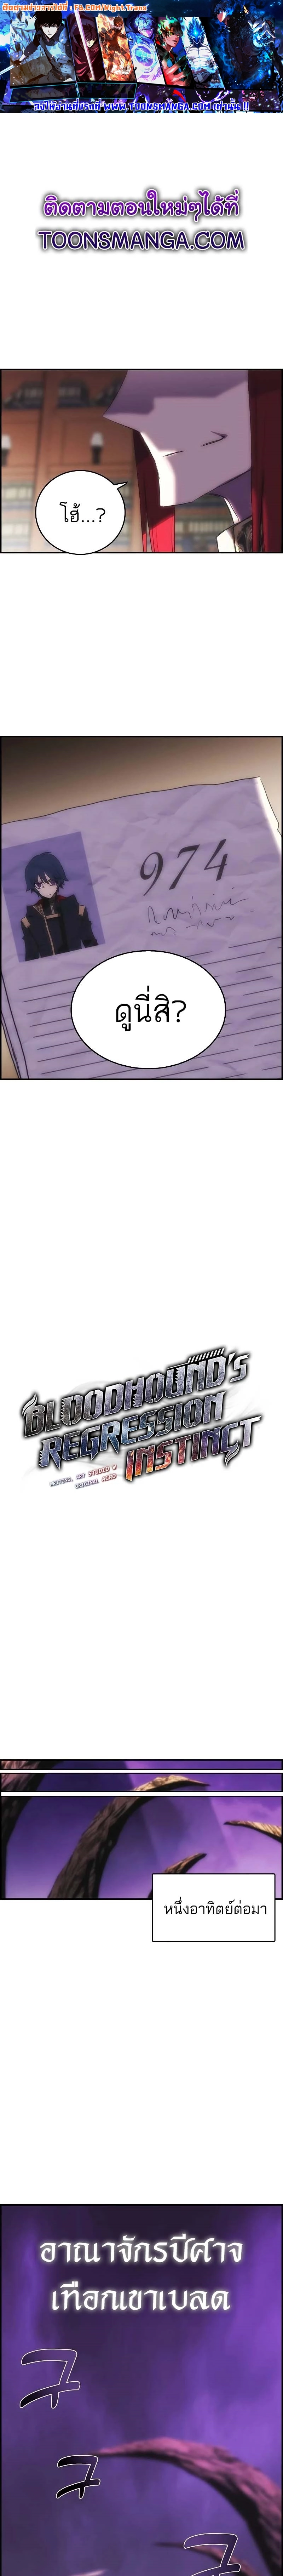 Bloodhound’s Regression Instinct 16 01